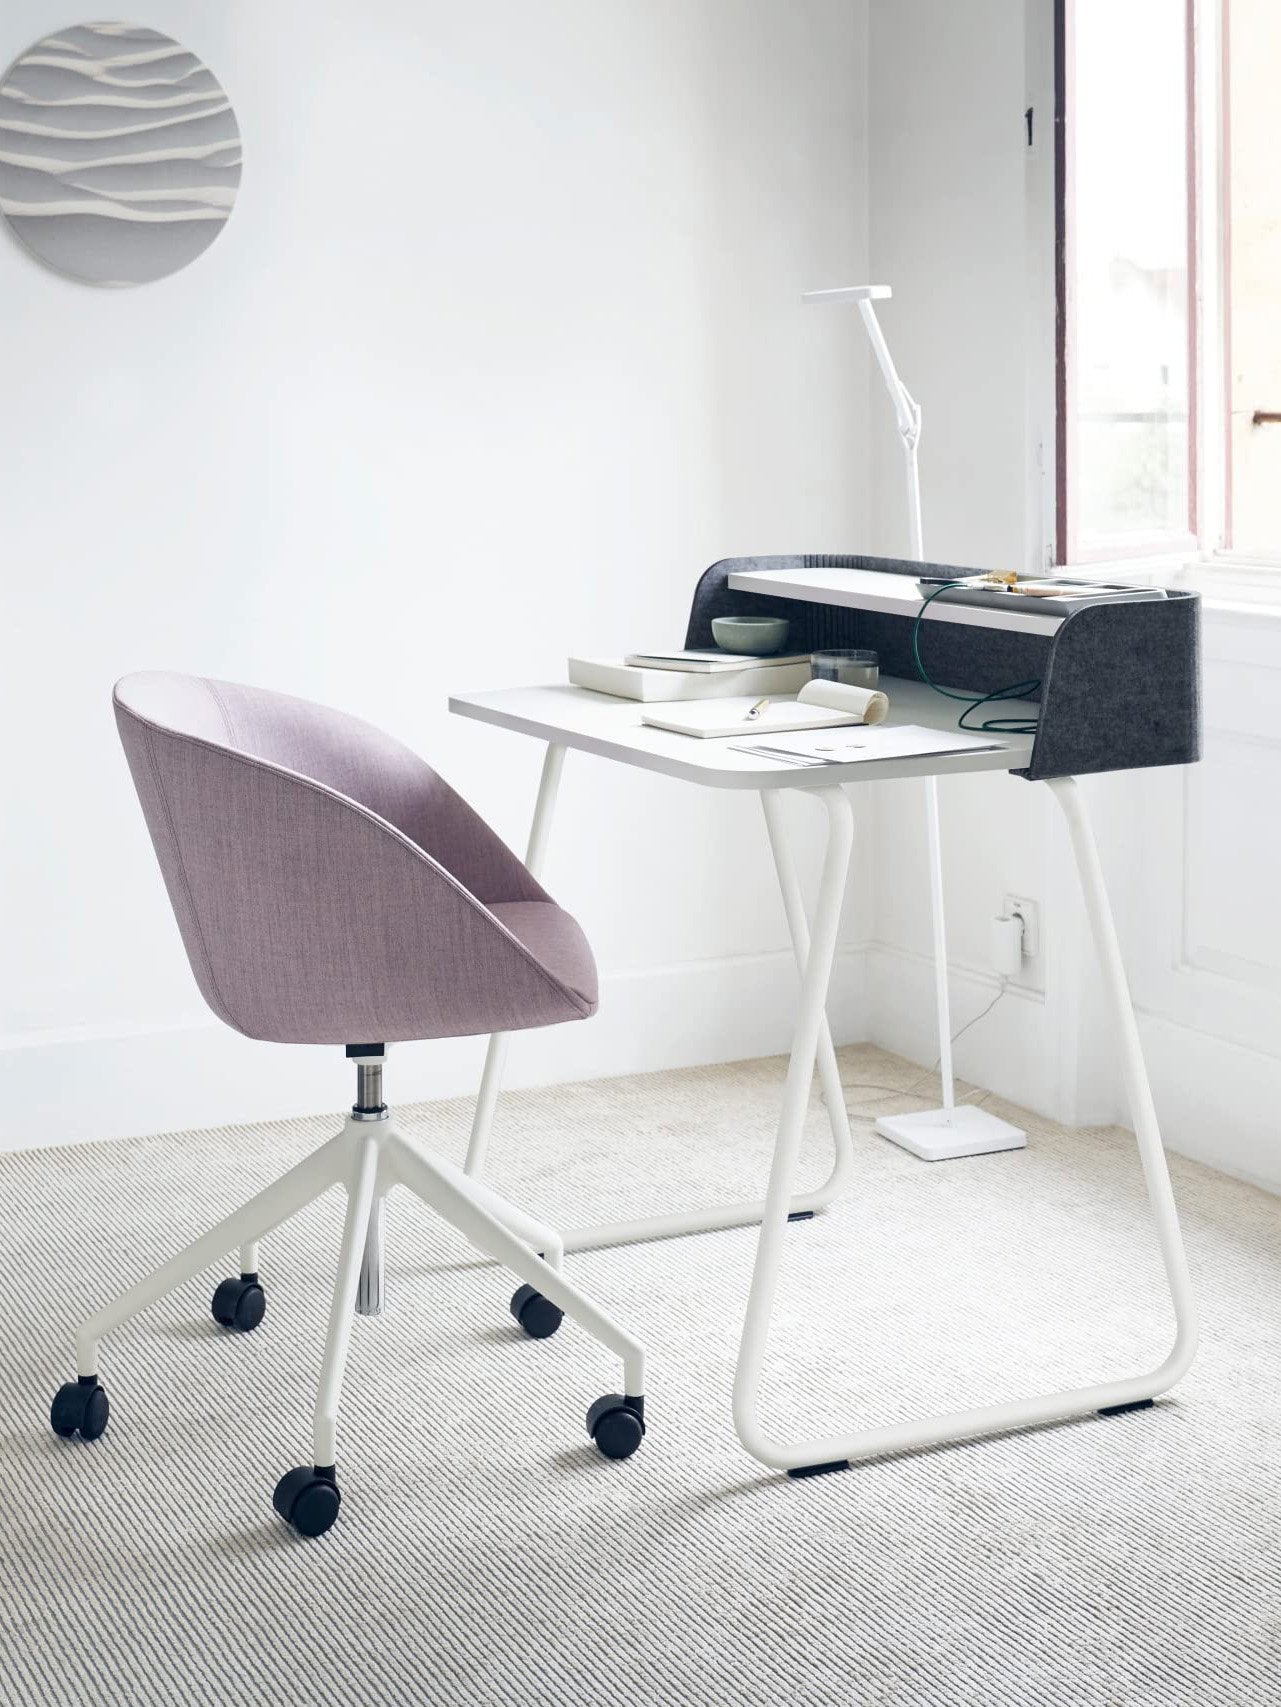 Sedus Secretair Home - Chair and Work